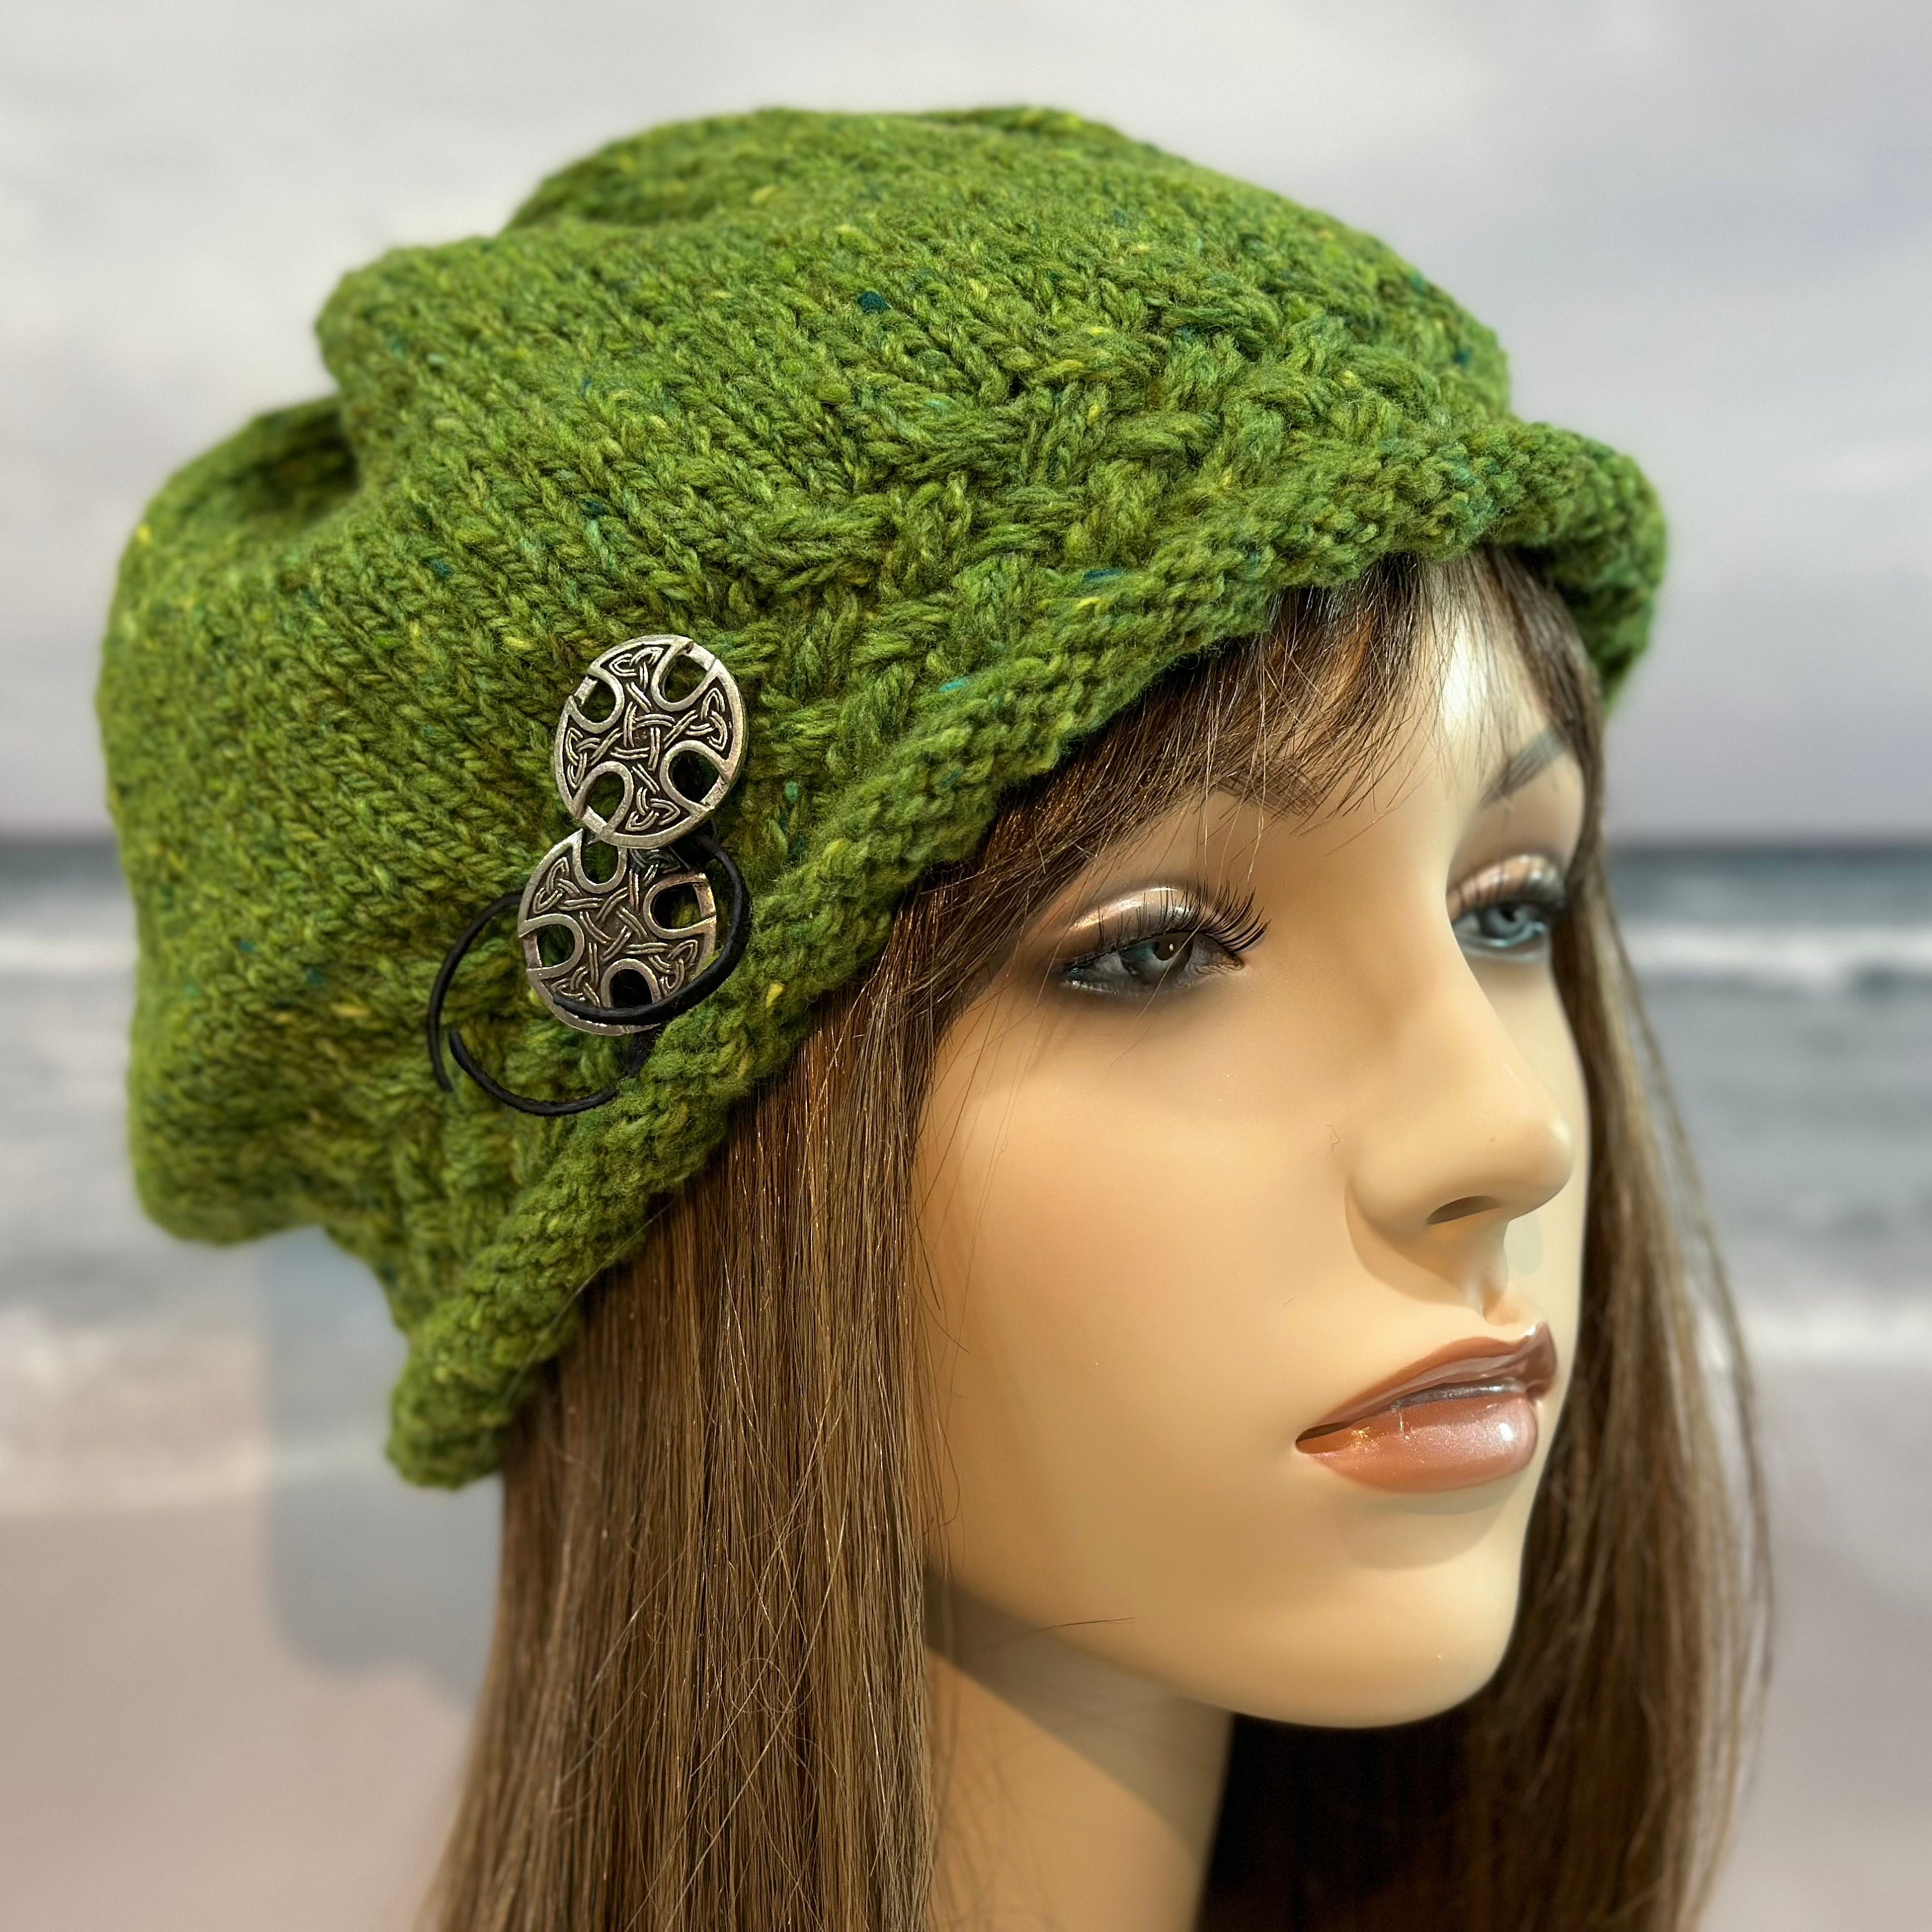 Bonnet Chimio Femme Chapeau Homme - Bonnet Reversible Tricot 100% Coton  Naturel Doux 2 Styles Grosse Tete Ete Hiver Mode Coré